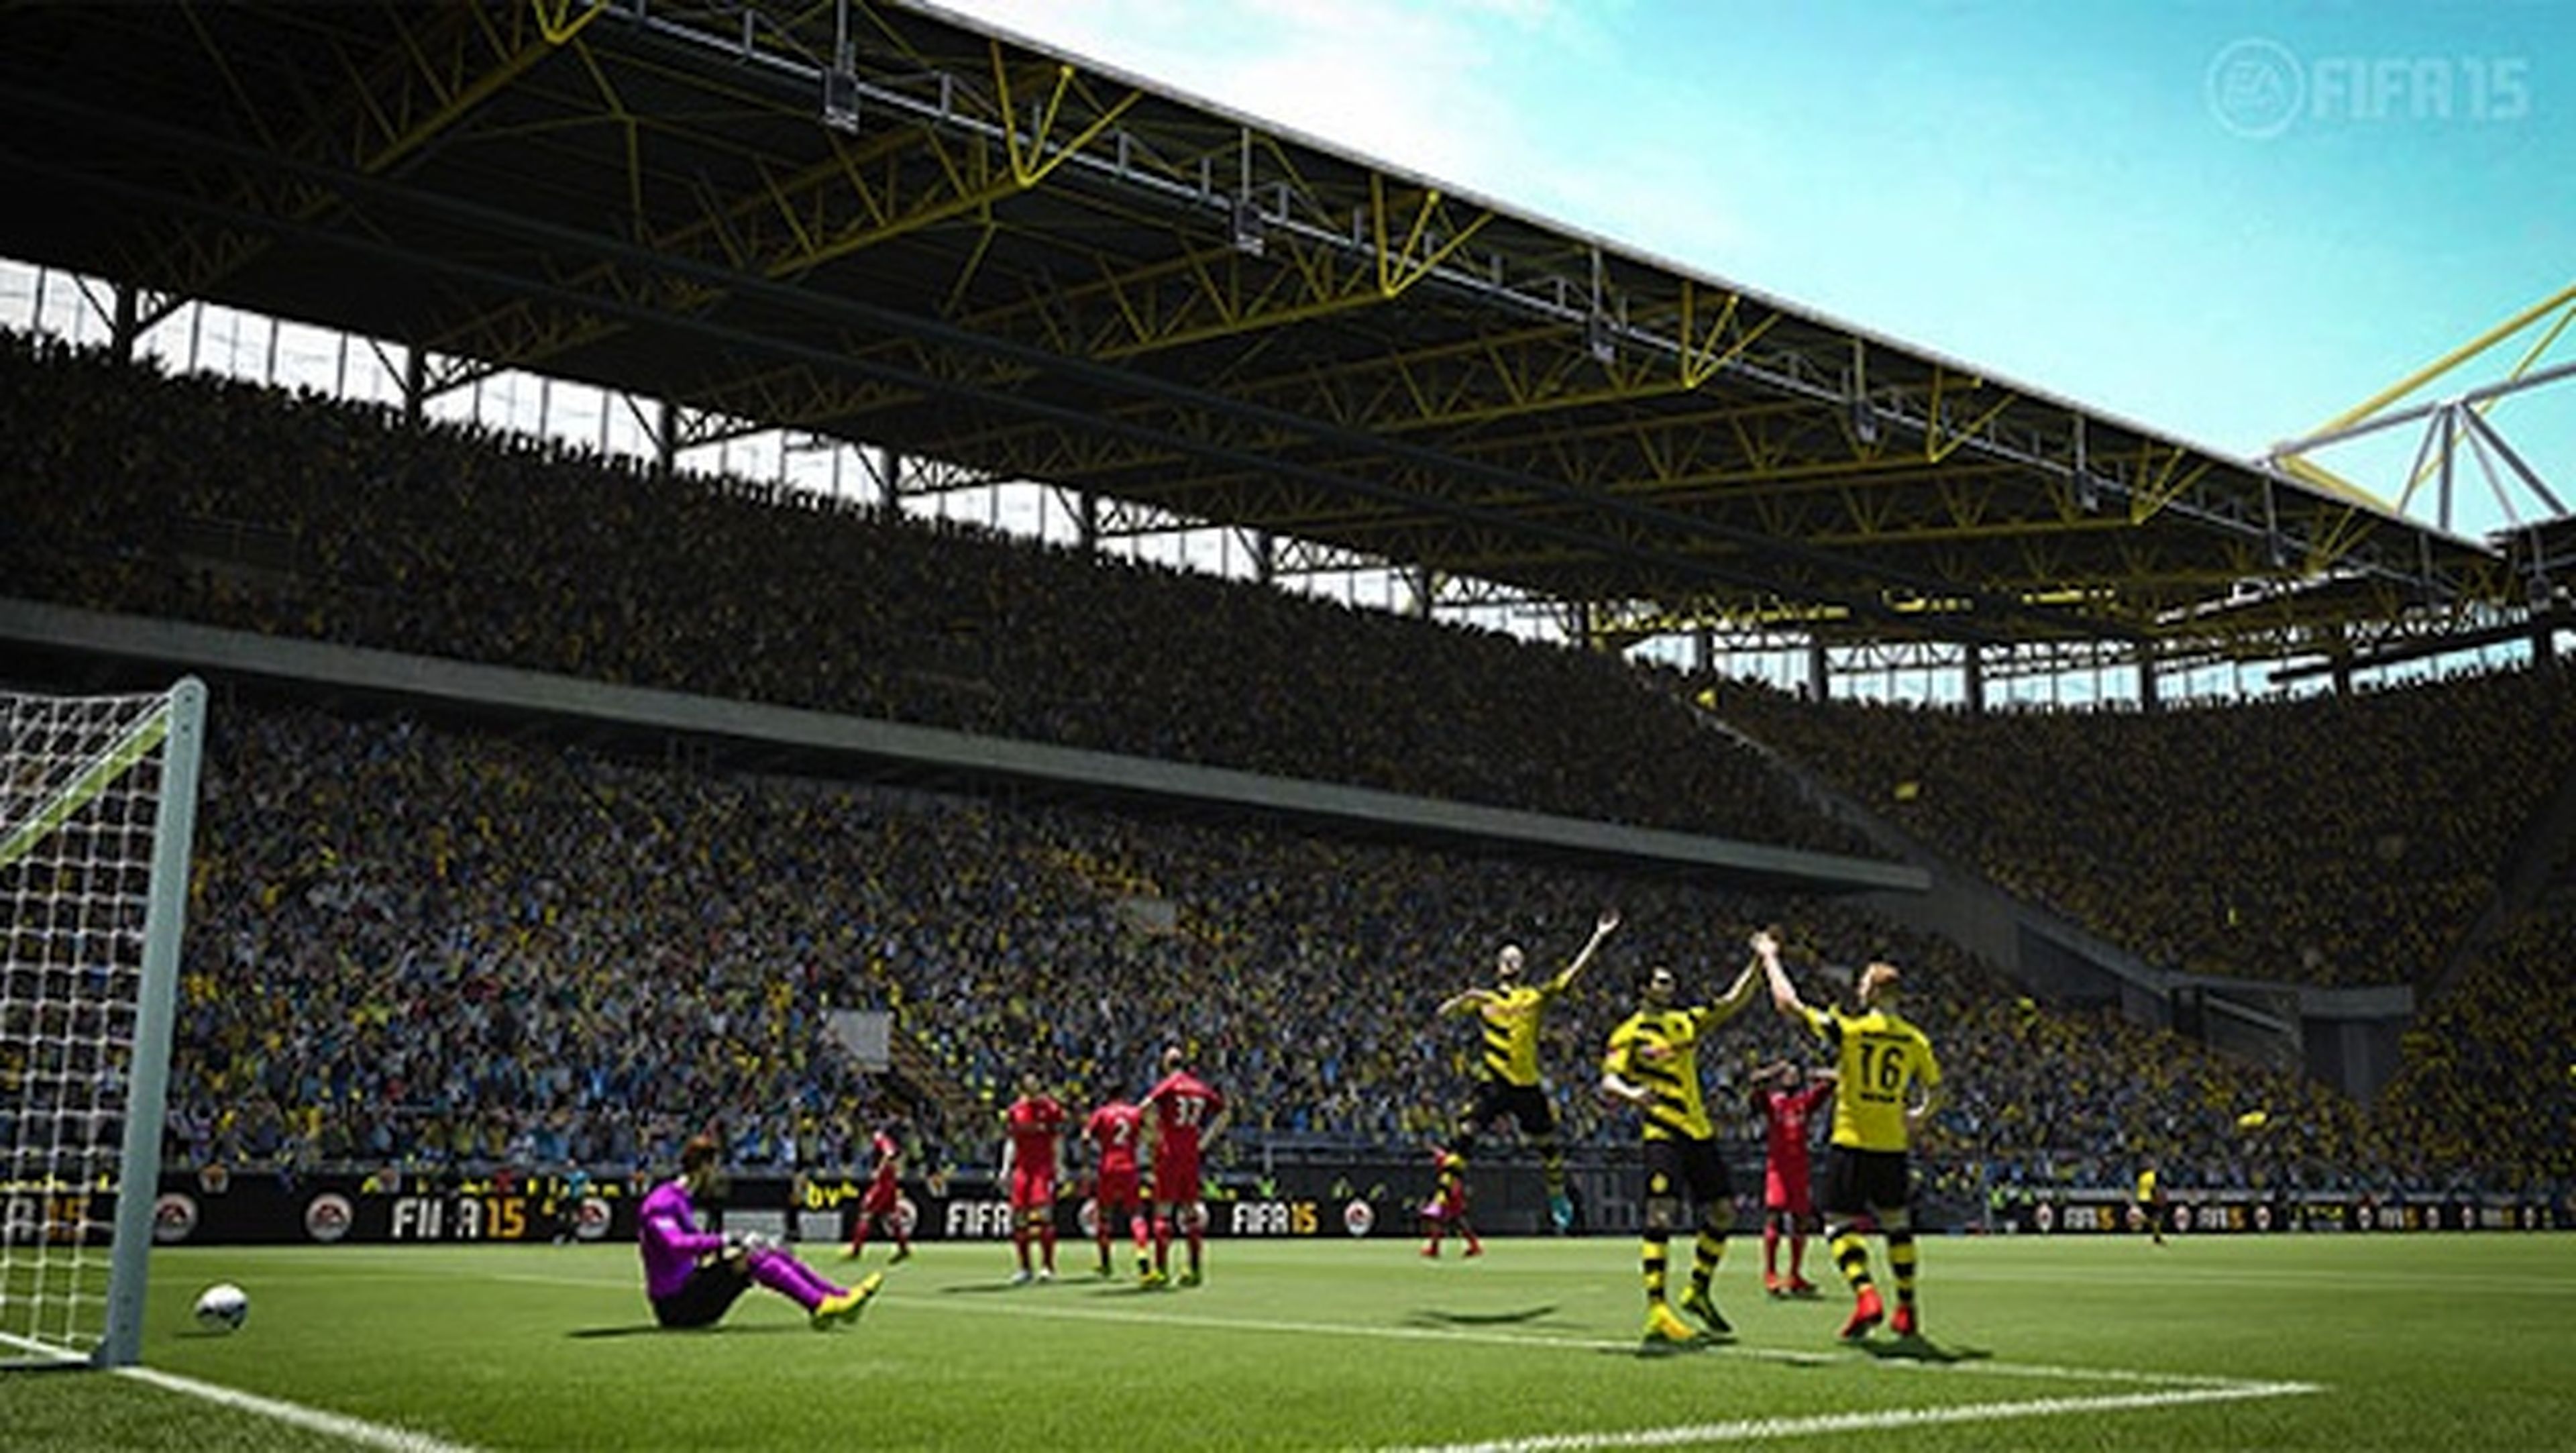 El demo de FIFA 15 para PC por fin está disponible